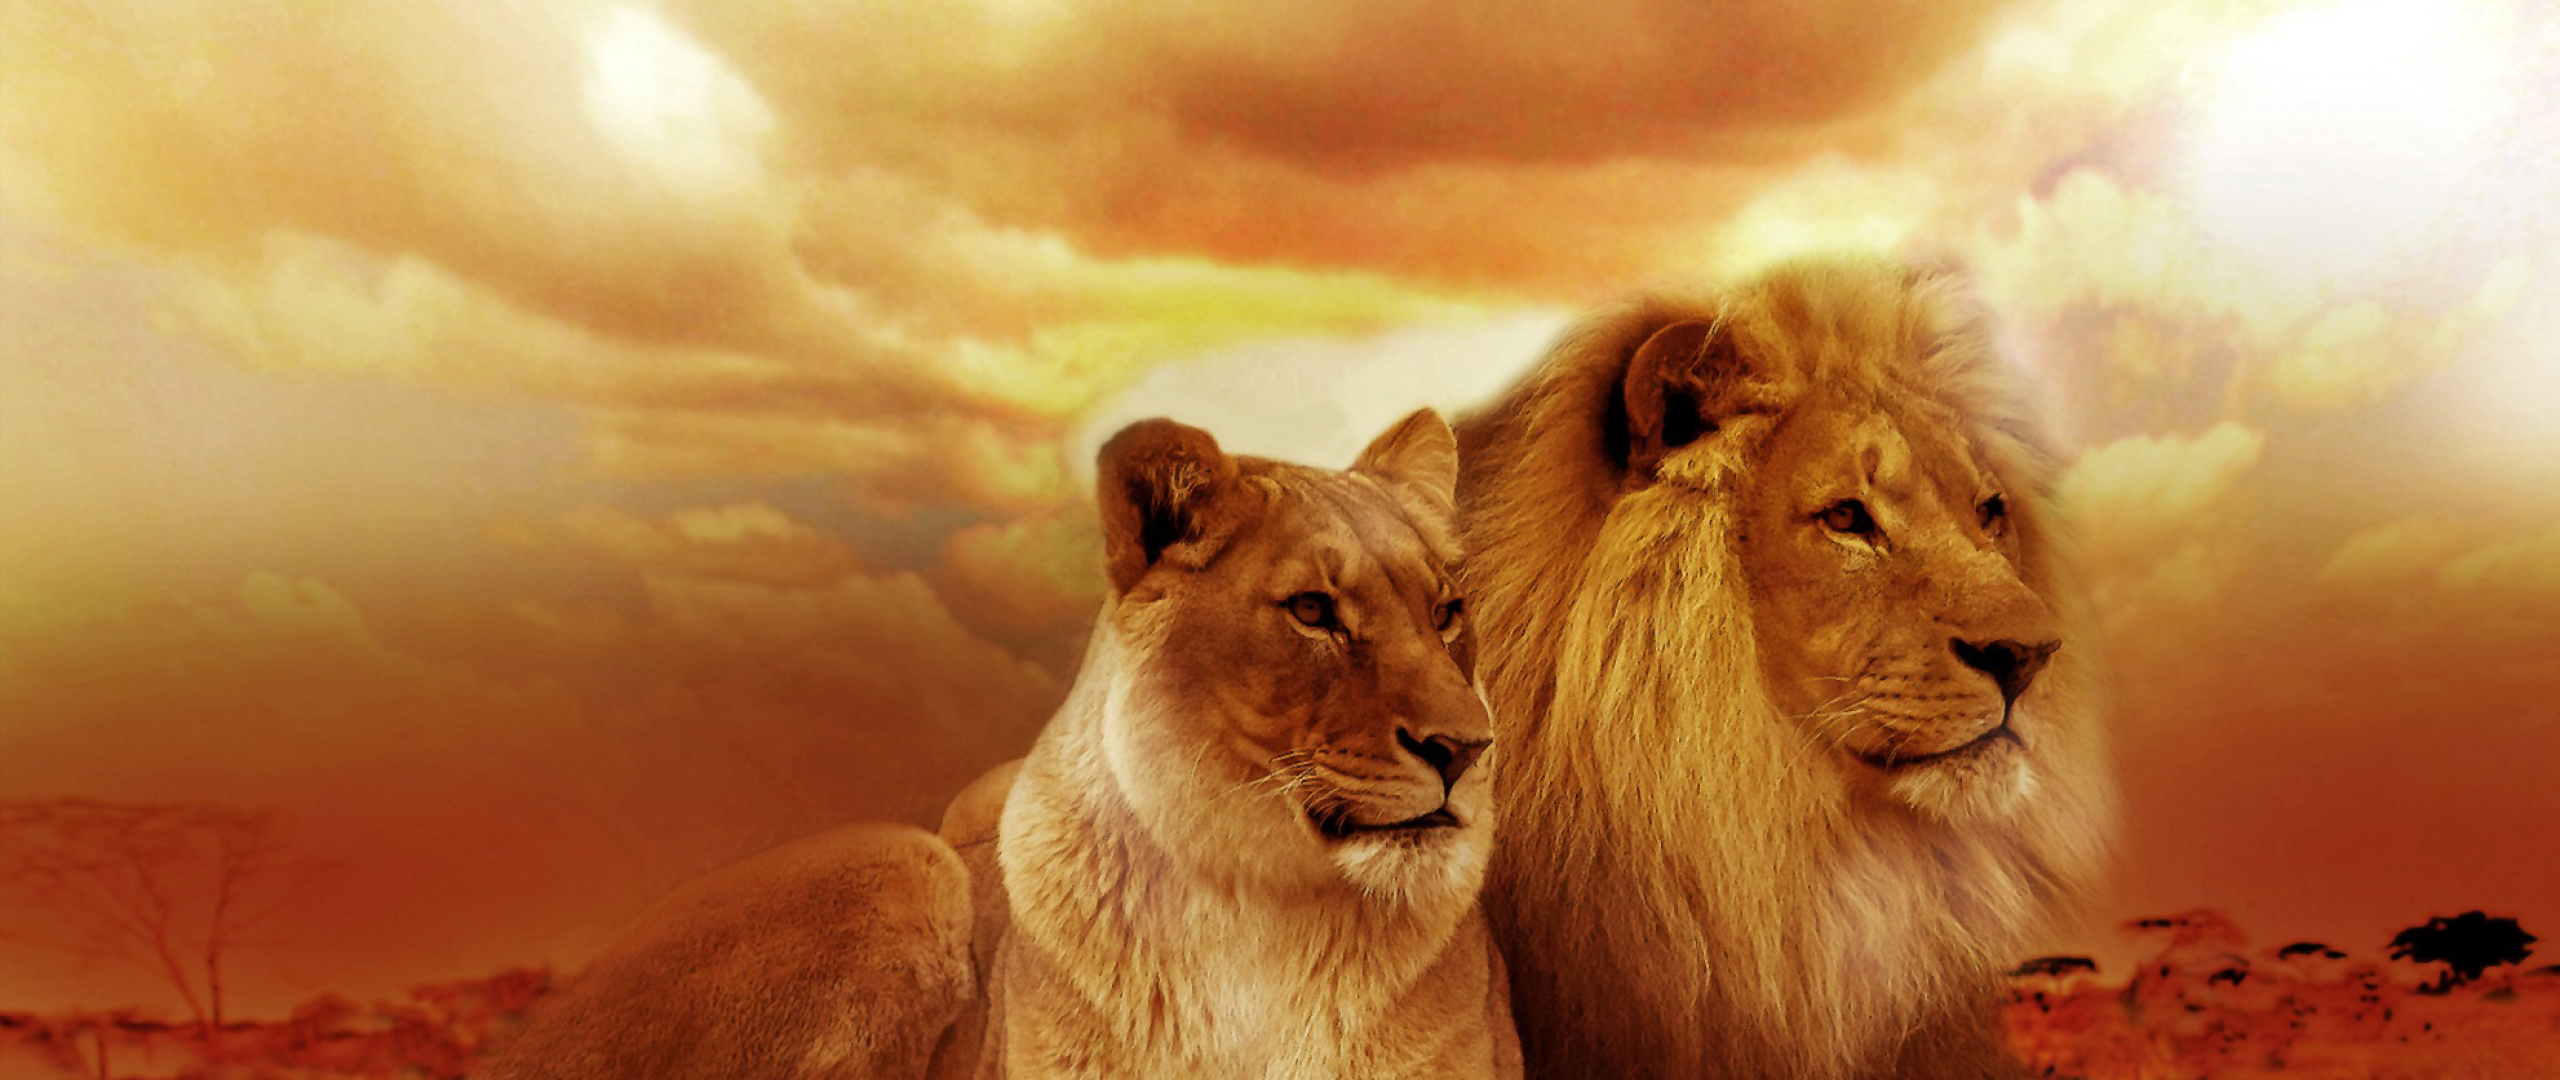 Лев мужчина цвет. Обои бежевый Лев. Лев aesthetic. Фотографии природы в высоком качестве.